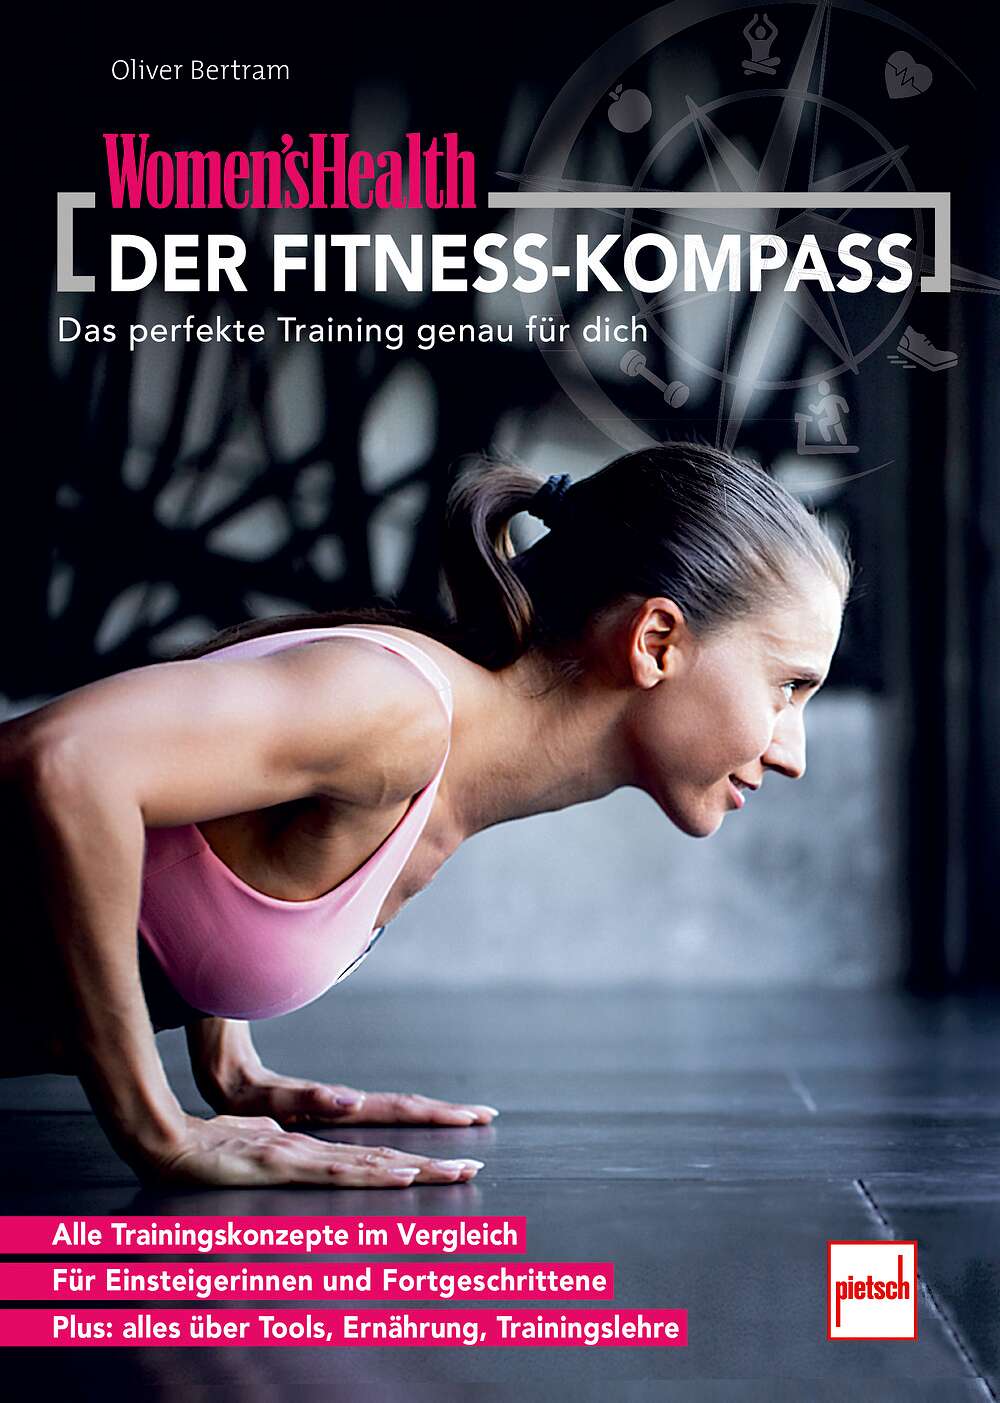 Pietsch Buch Women's Health "Der Fitness-Kompass" von Pietsch